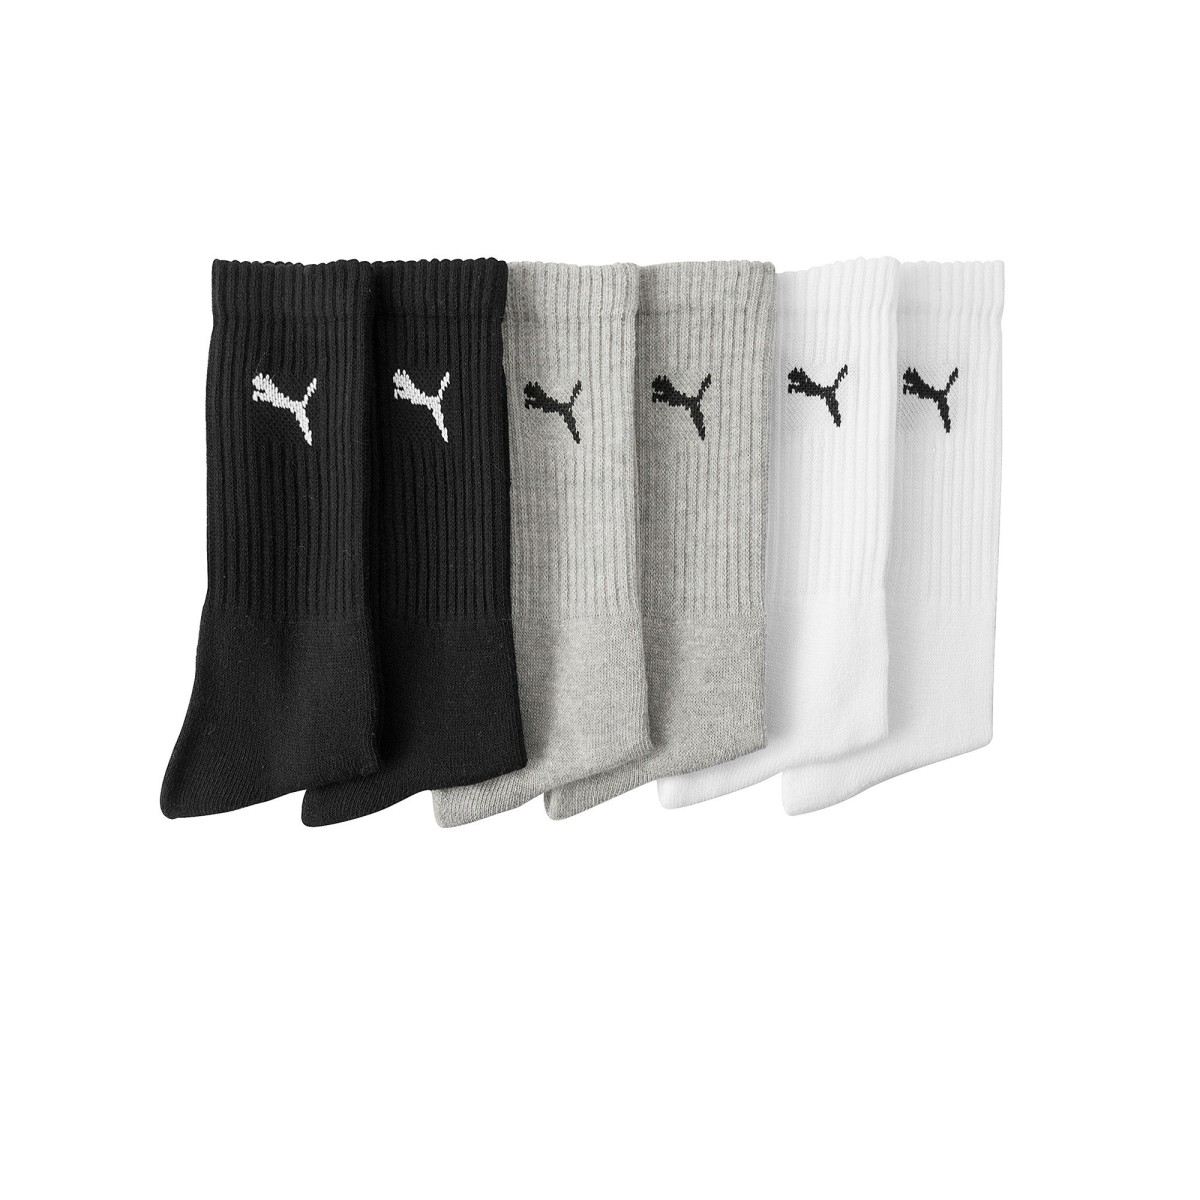 Blancheporte Sada 6 párů sportovních ponožek PUMA, šedé + černé + bílé šedá+černá+bílá 39/42